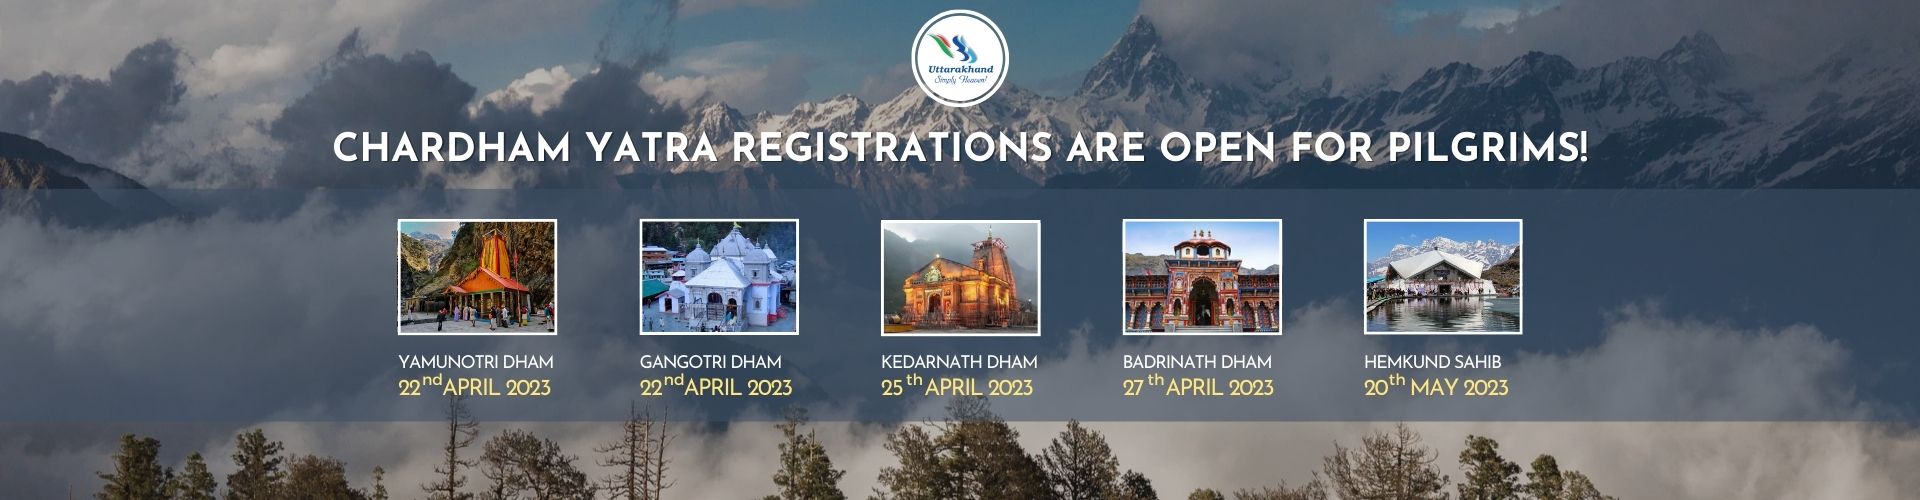 uttarakhand tourism online registration